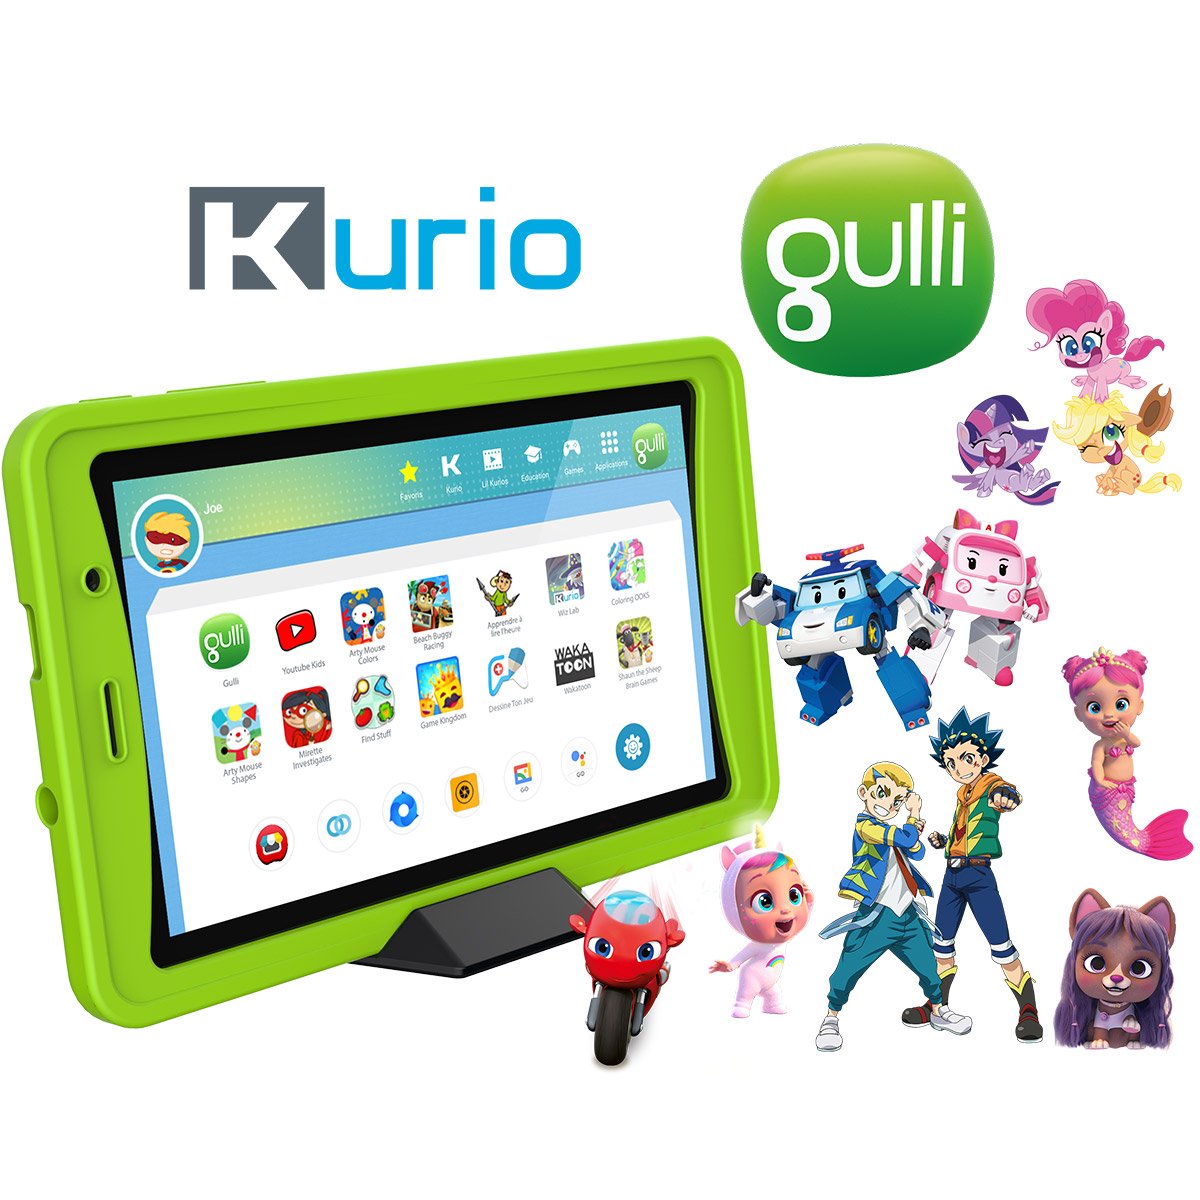 Tablette Kurio Ultra 2 7 32 Go Multicolore - Cdiscount Jeux - Jouets